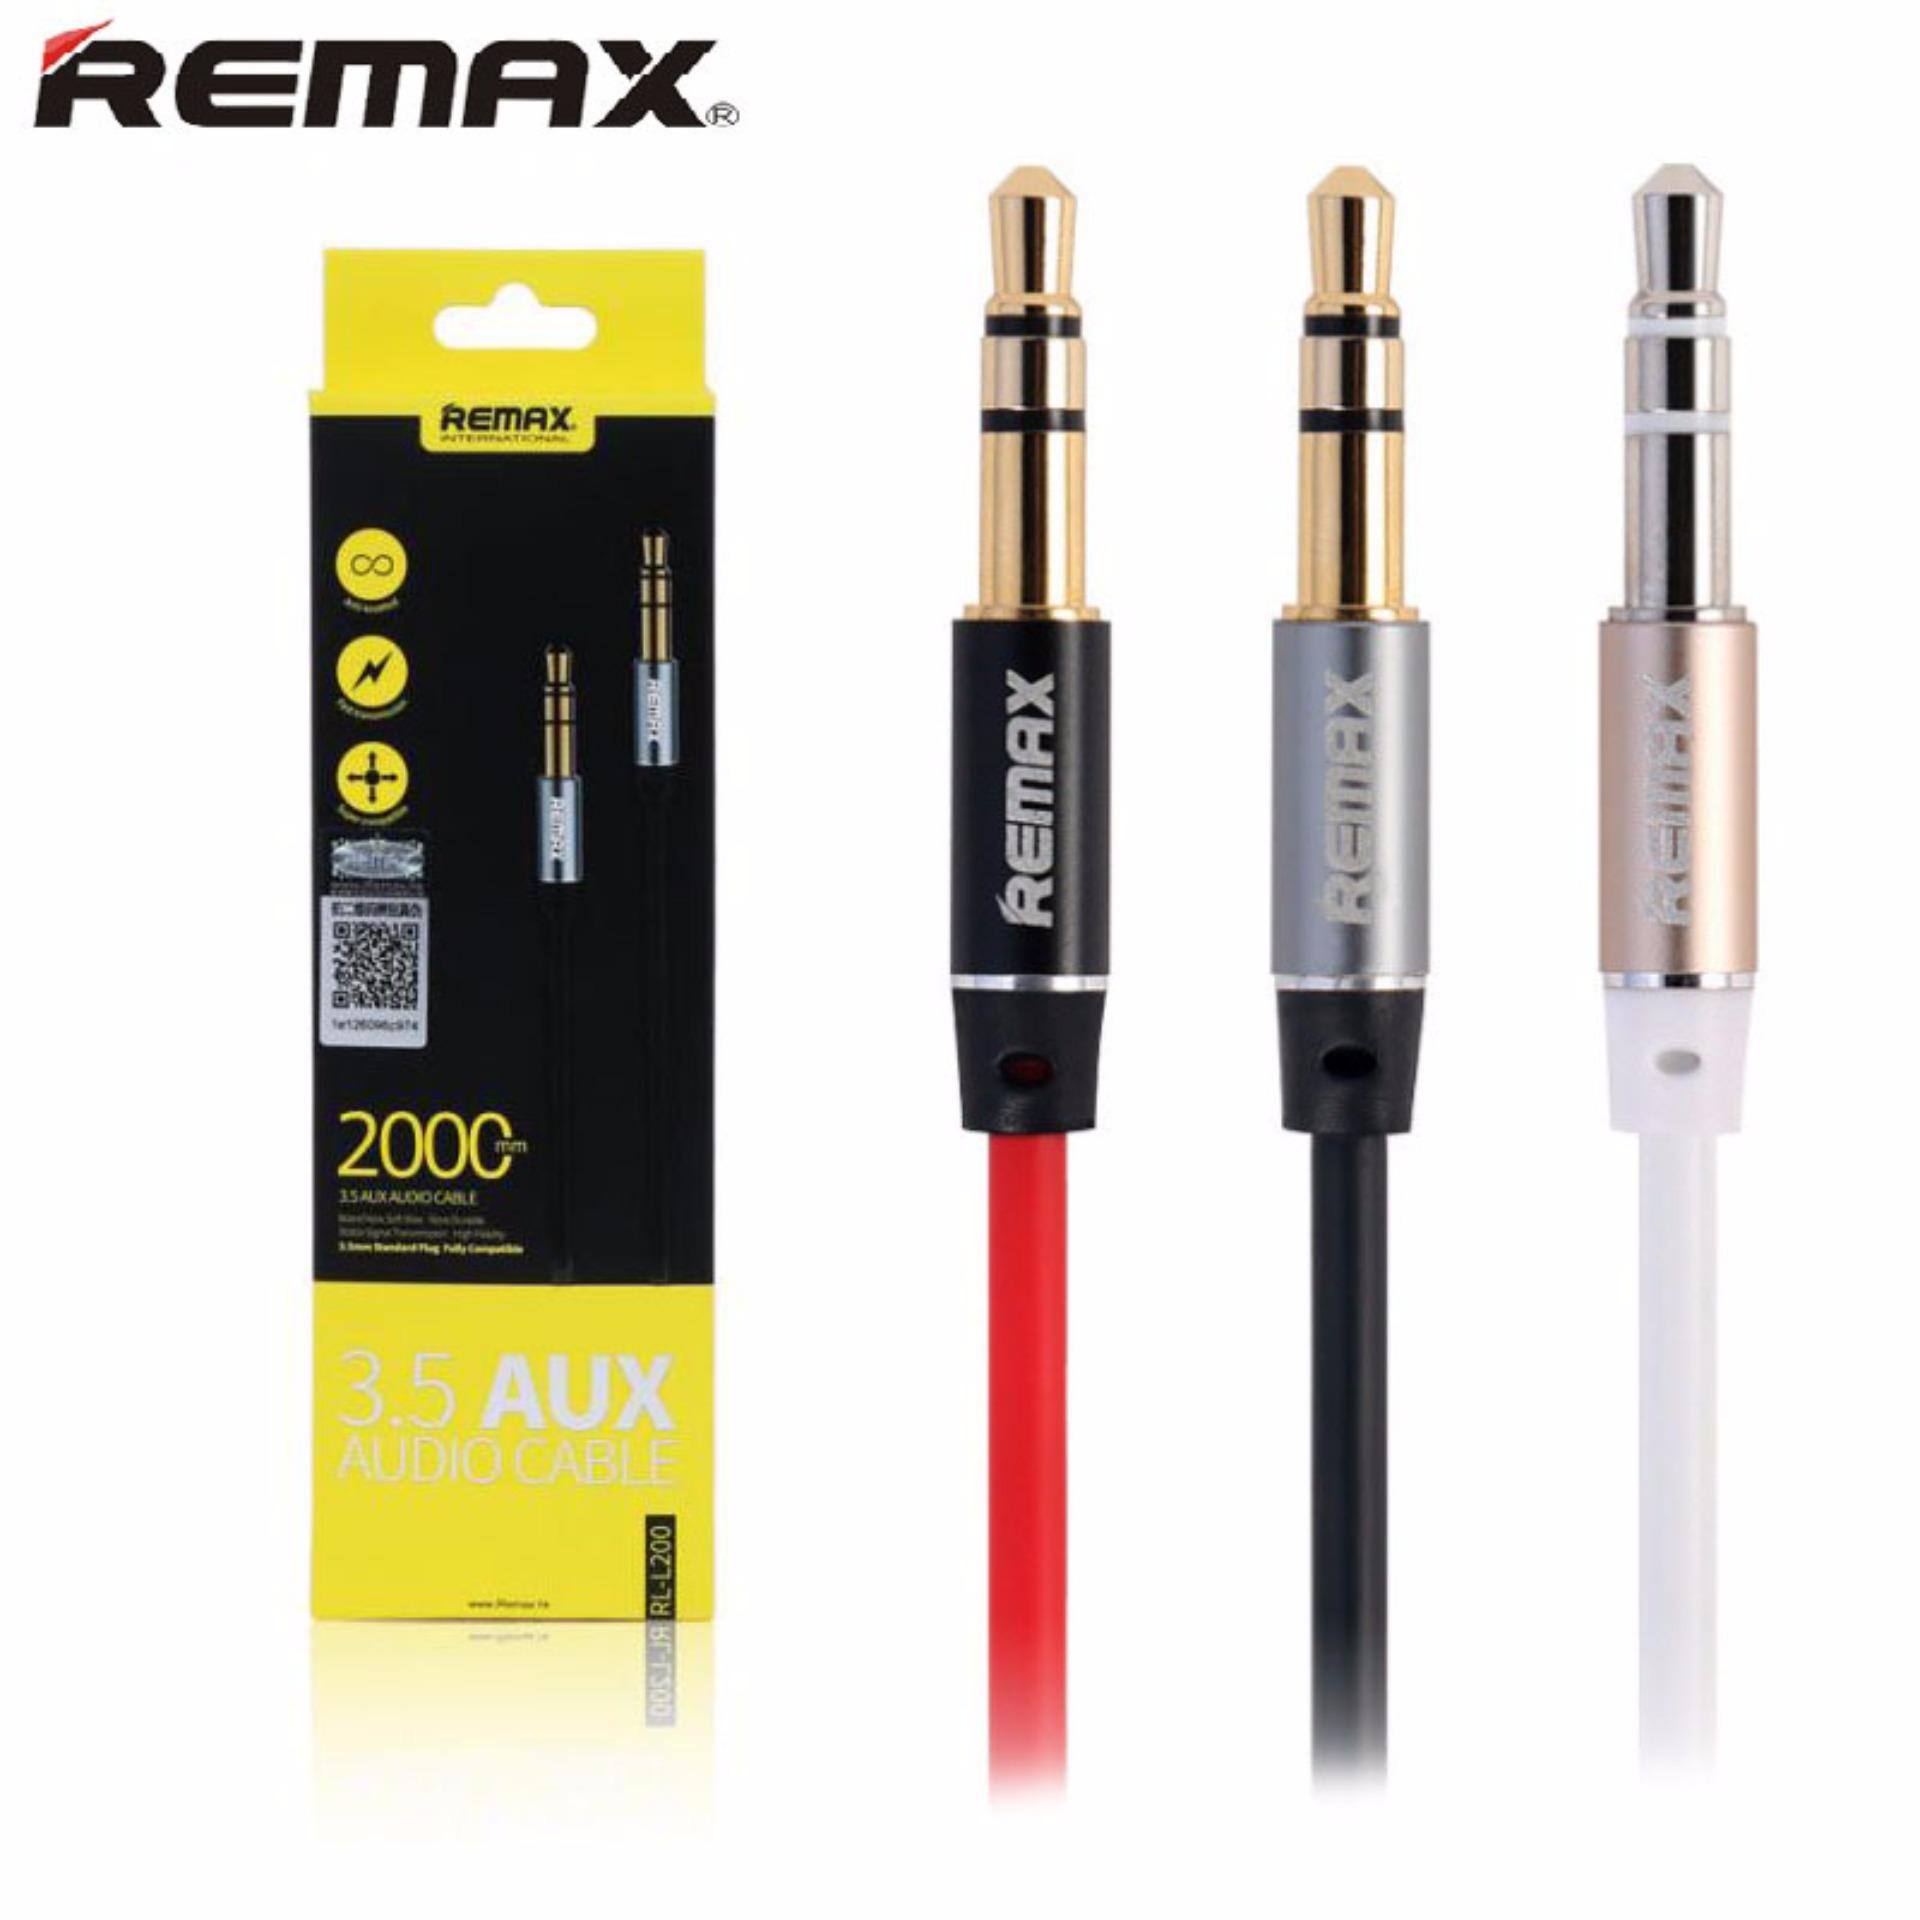 Dây cáp âm thanh chất lượng cao Audio 3.5 AUX Remax (2 đầu đực, dài 2 mét)